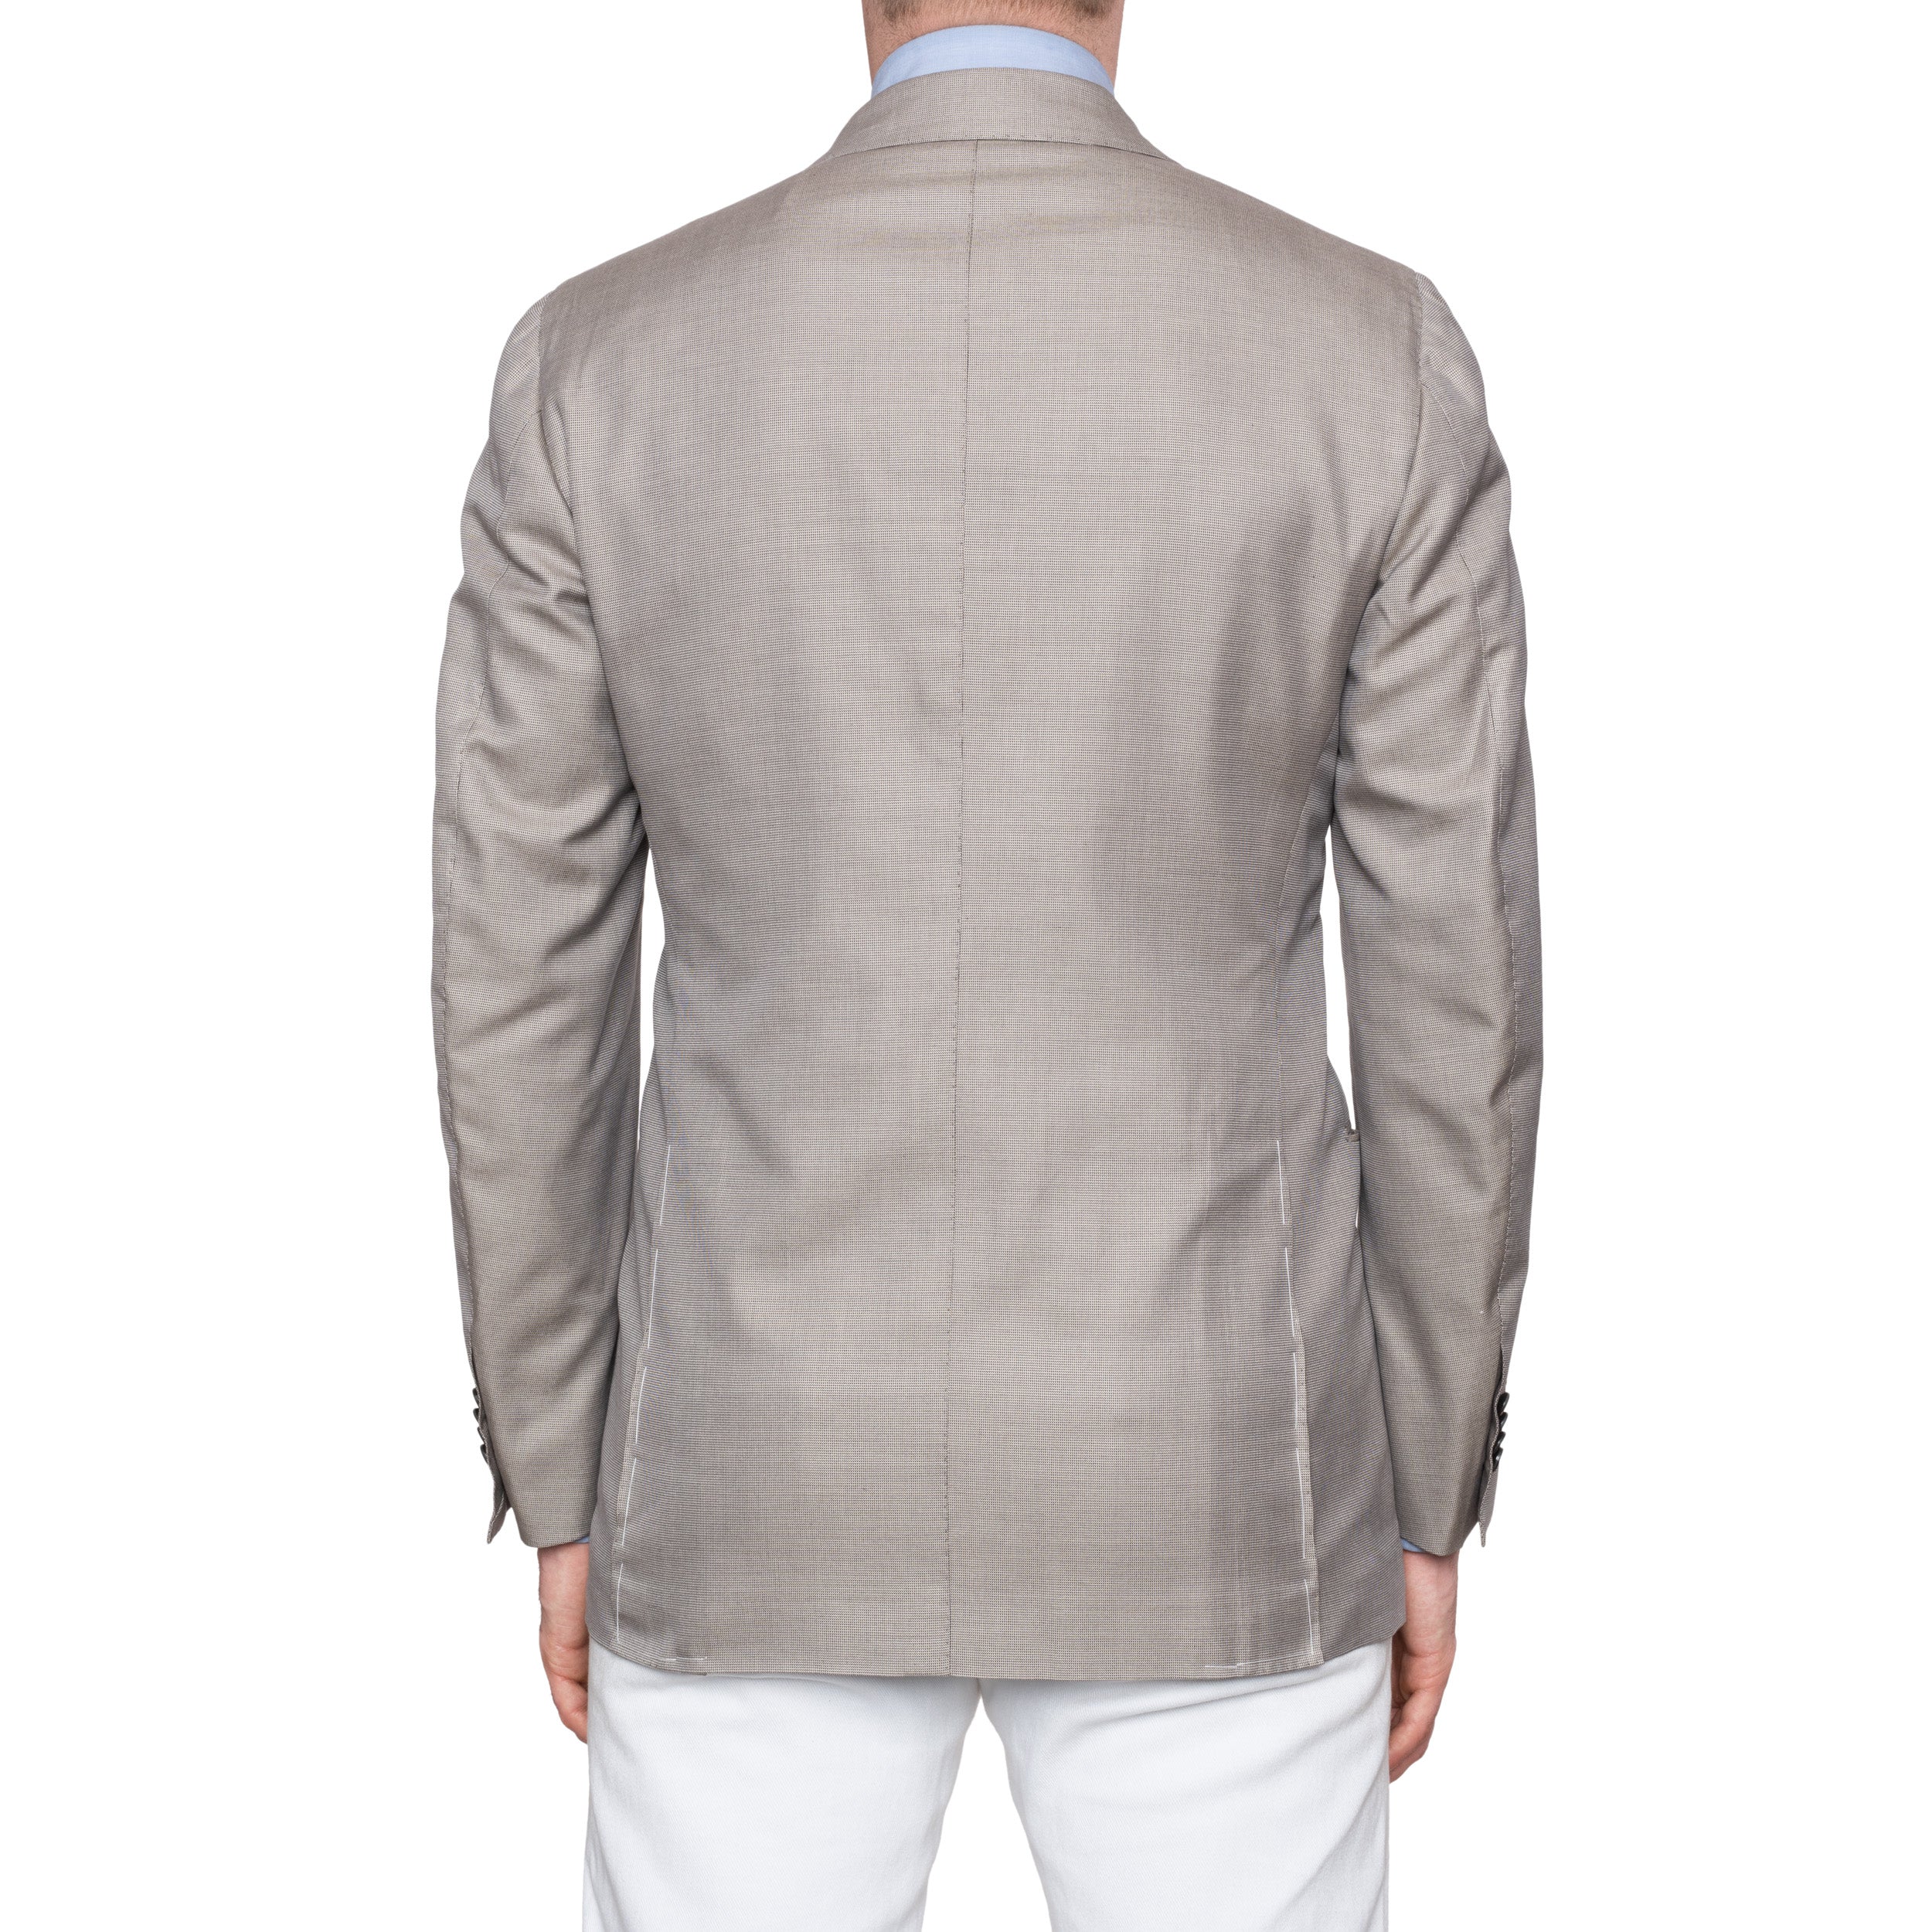 CESARE ATTOLINI Napoli Gray Cotton Silk Double Breasted Blazer Jacket NEW CESARE ATTOLINI